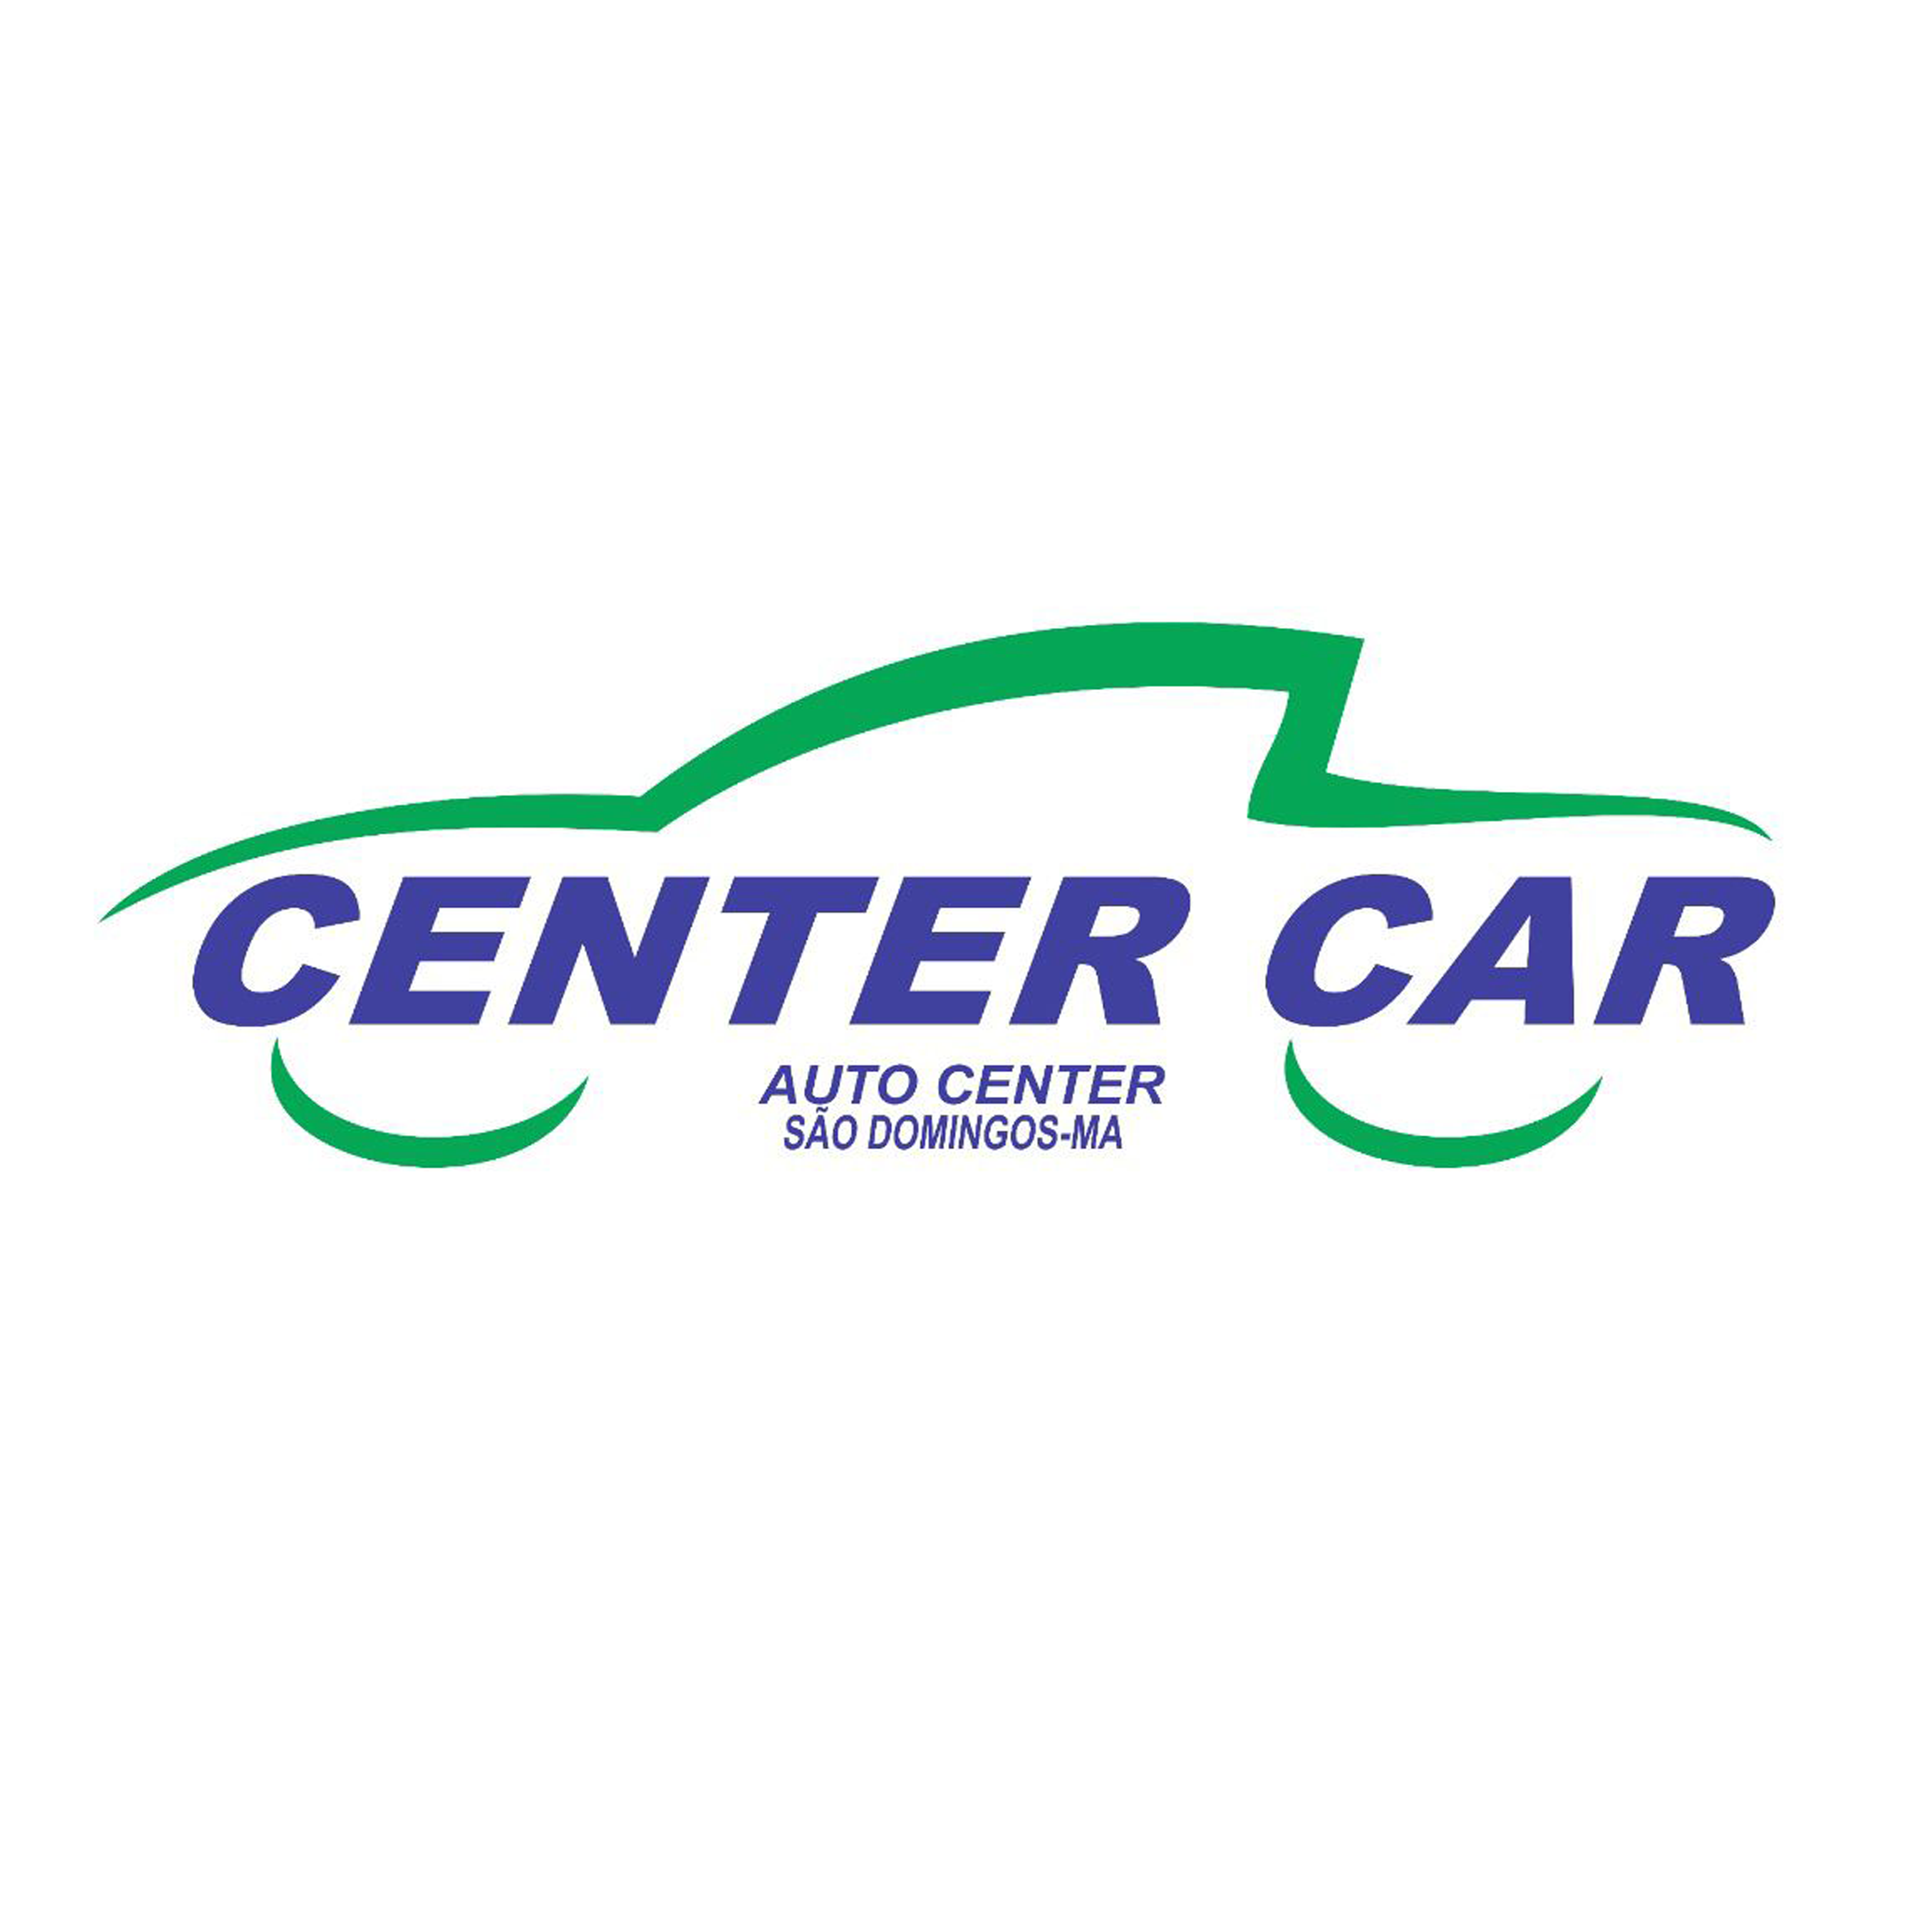 Center Car - São Domingos-MA